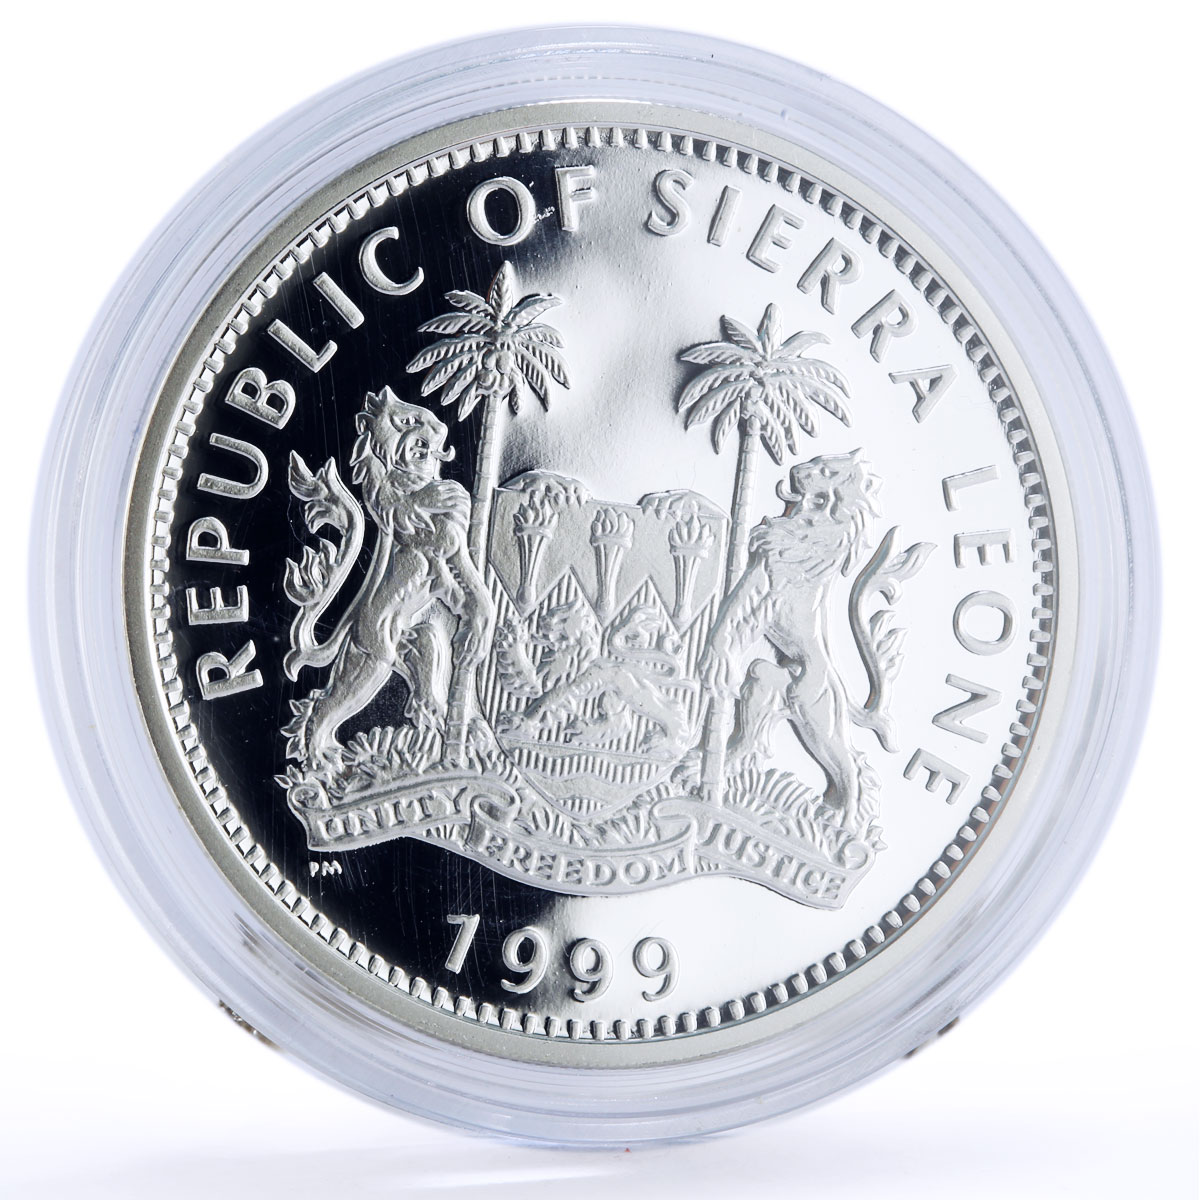 Sierra Leone 10 dollars Seafaring Ship Clipper Amerigo Vespucci silver coin 1999